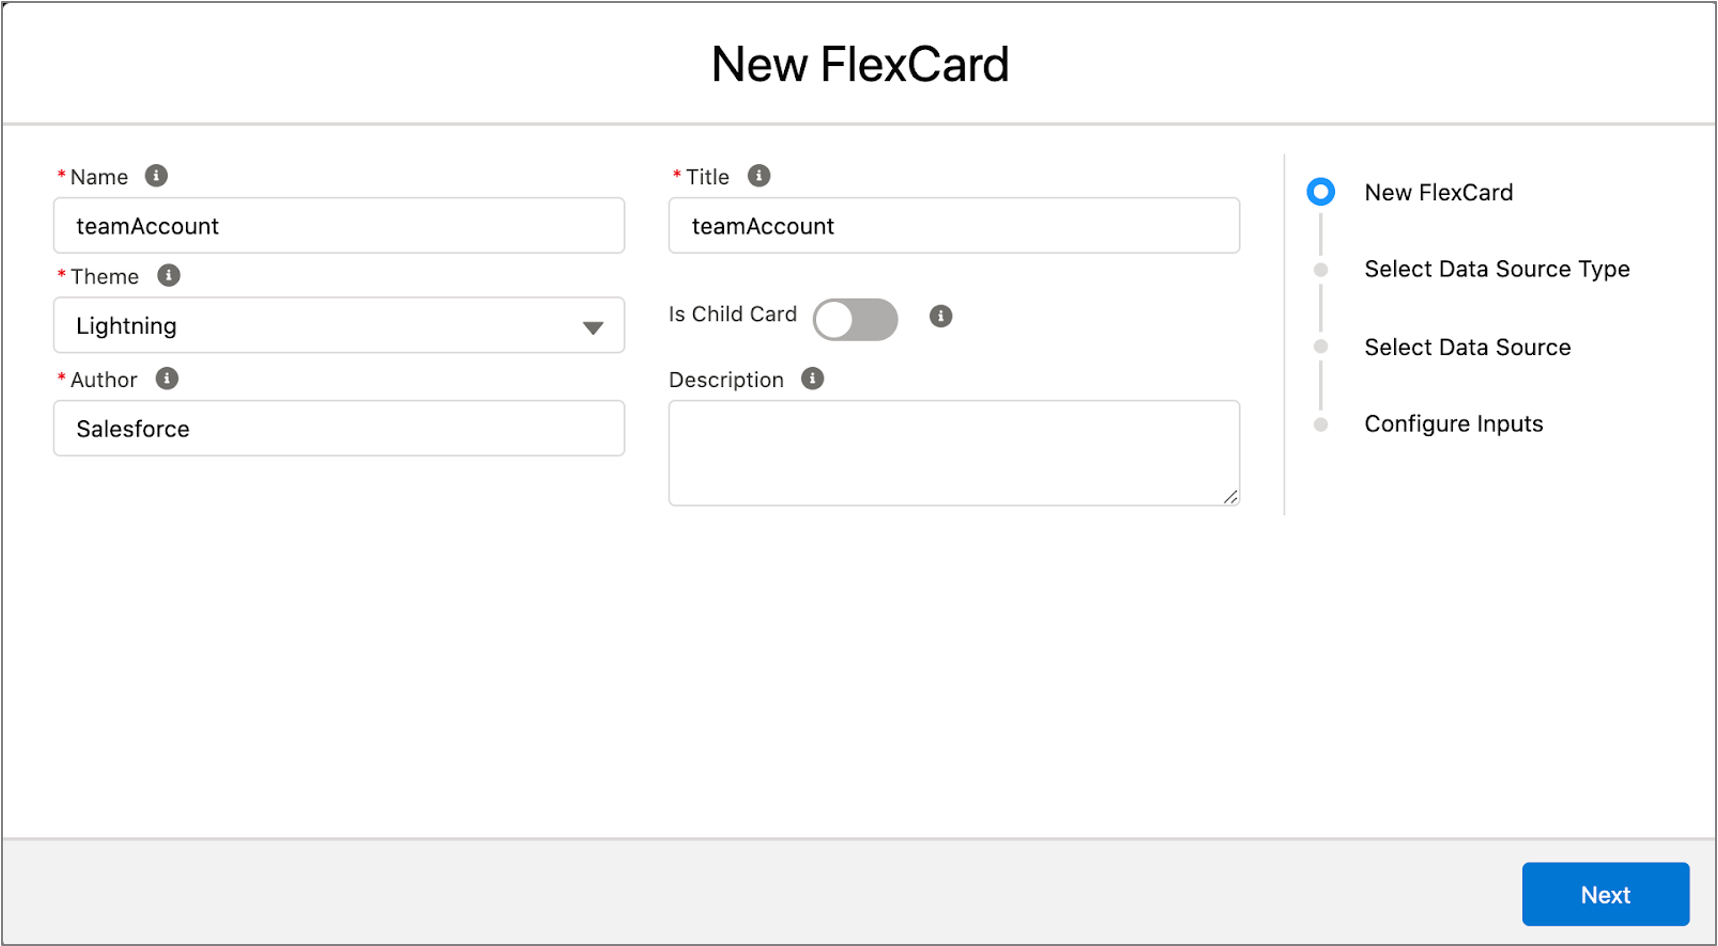 New FlexCard details.